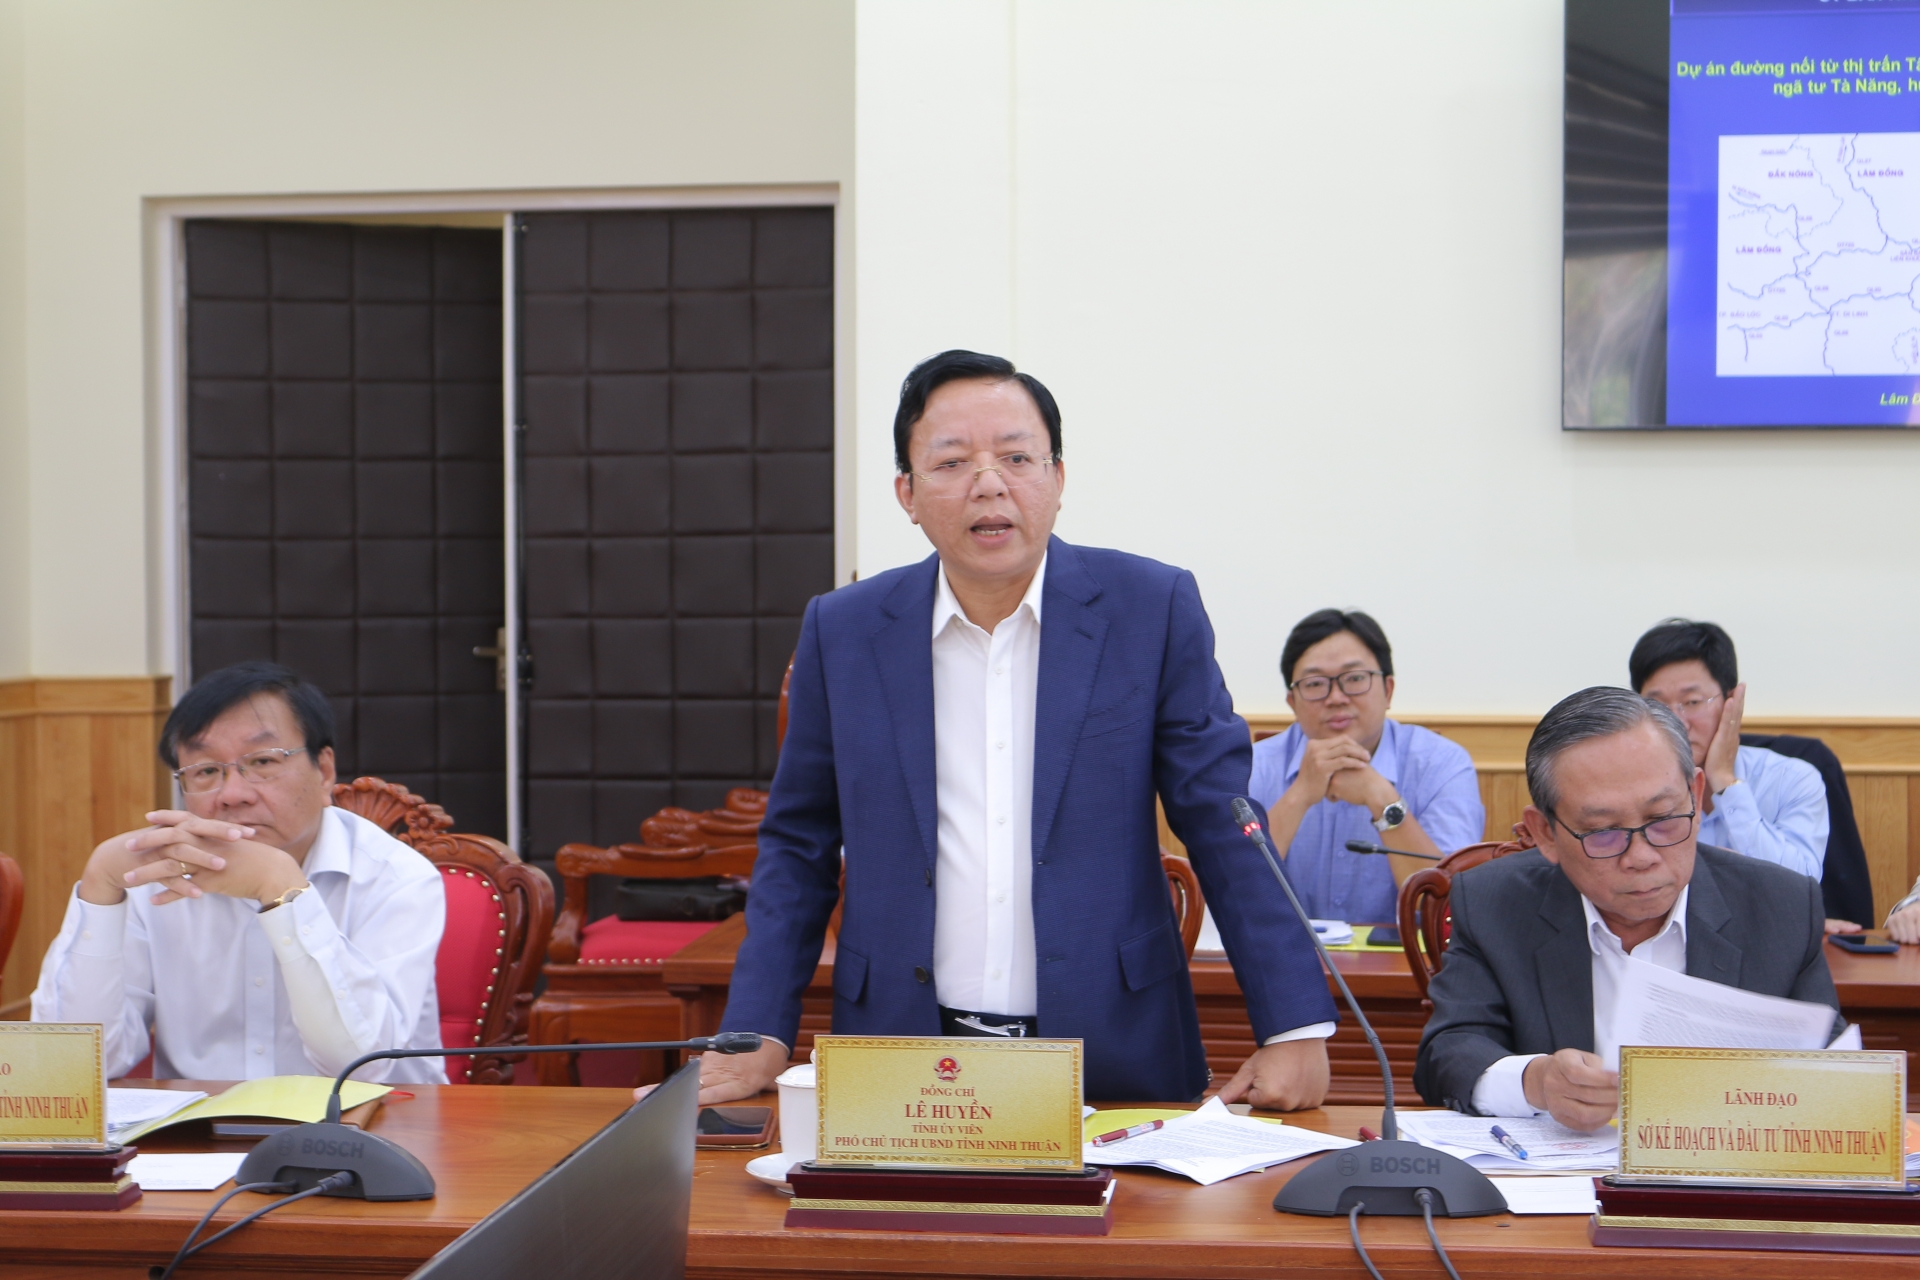 Phó Chủ tịch UBND tỉnh Ninh Thuận Lê Huyền trao đổi tại buổi làm việc